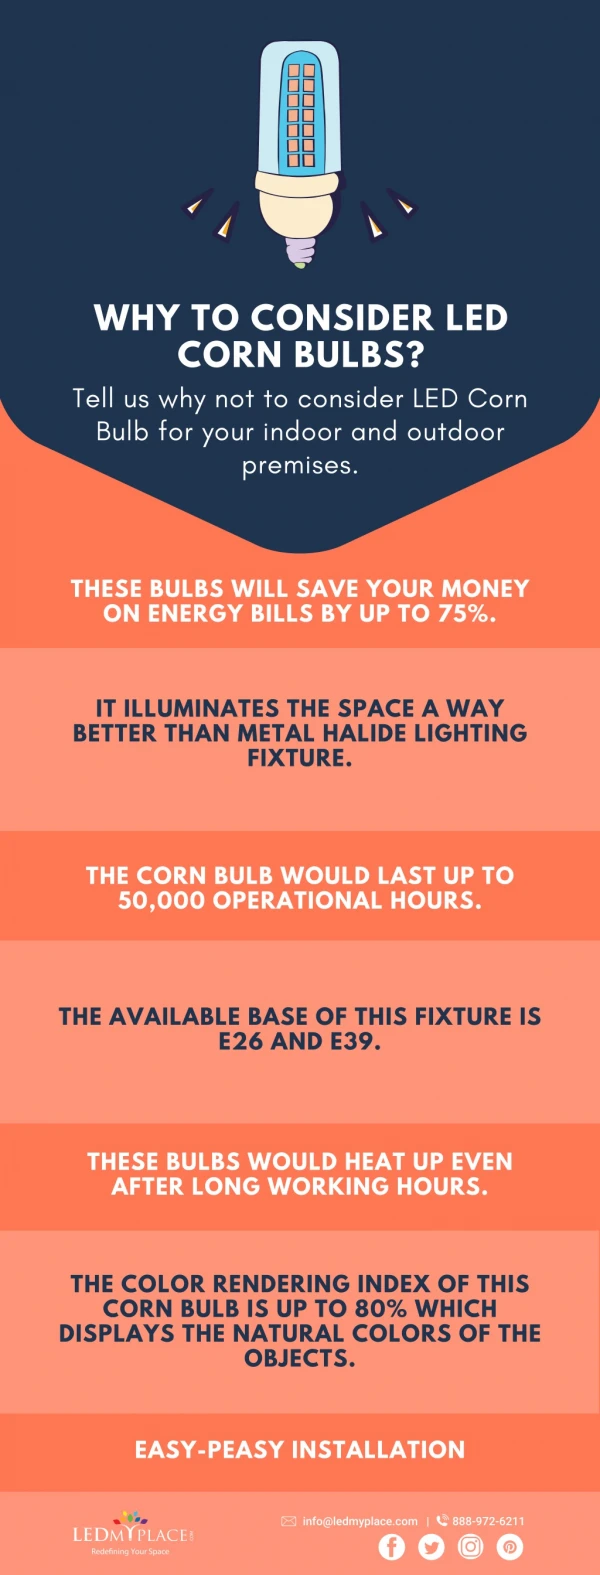 Why consider led corn bulbs?